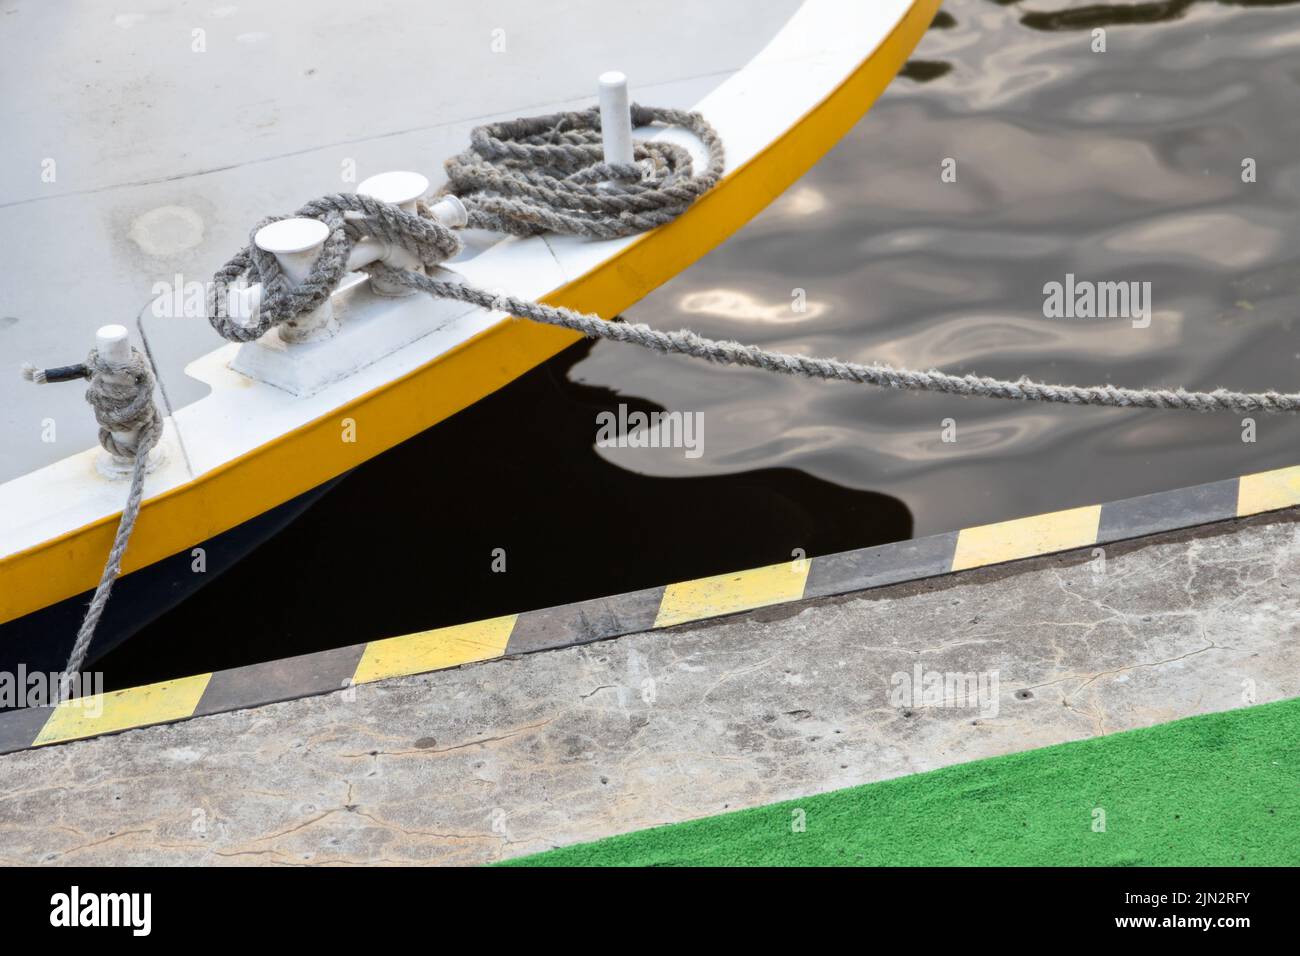 Los bolardos con cuerdas de amarre anudadas están en una cubierta del barco Foto de stock